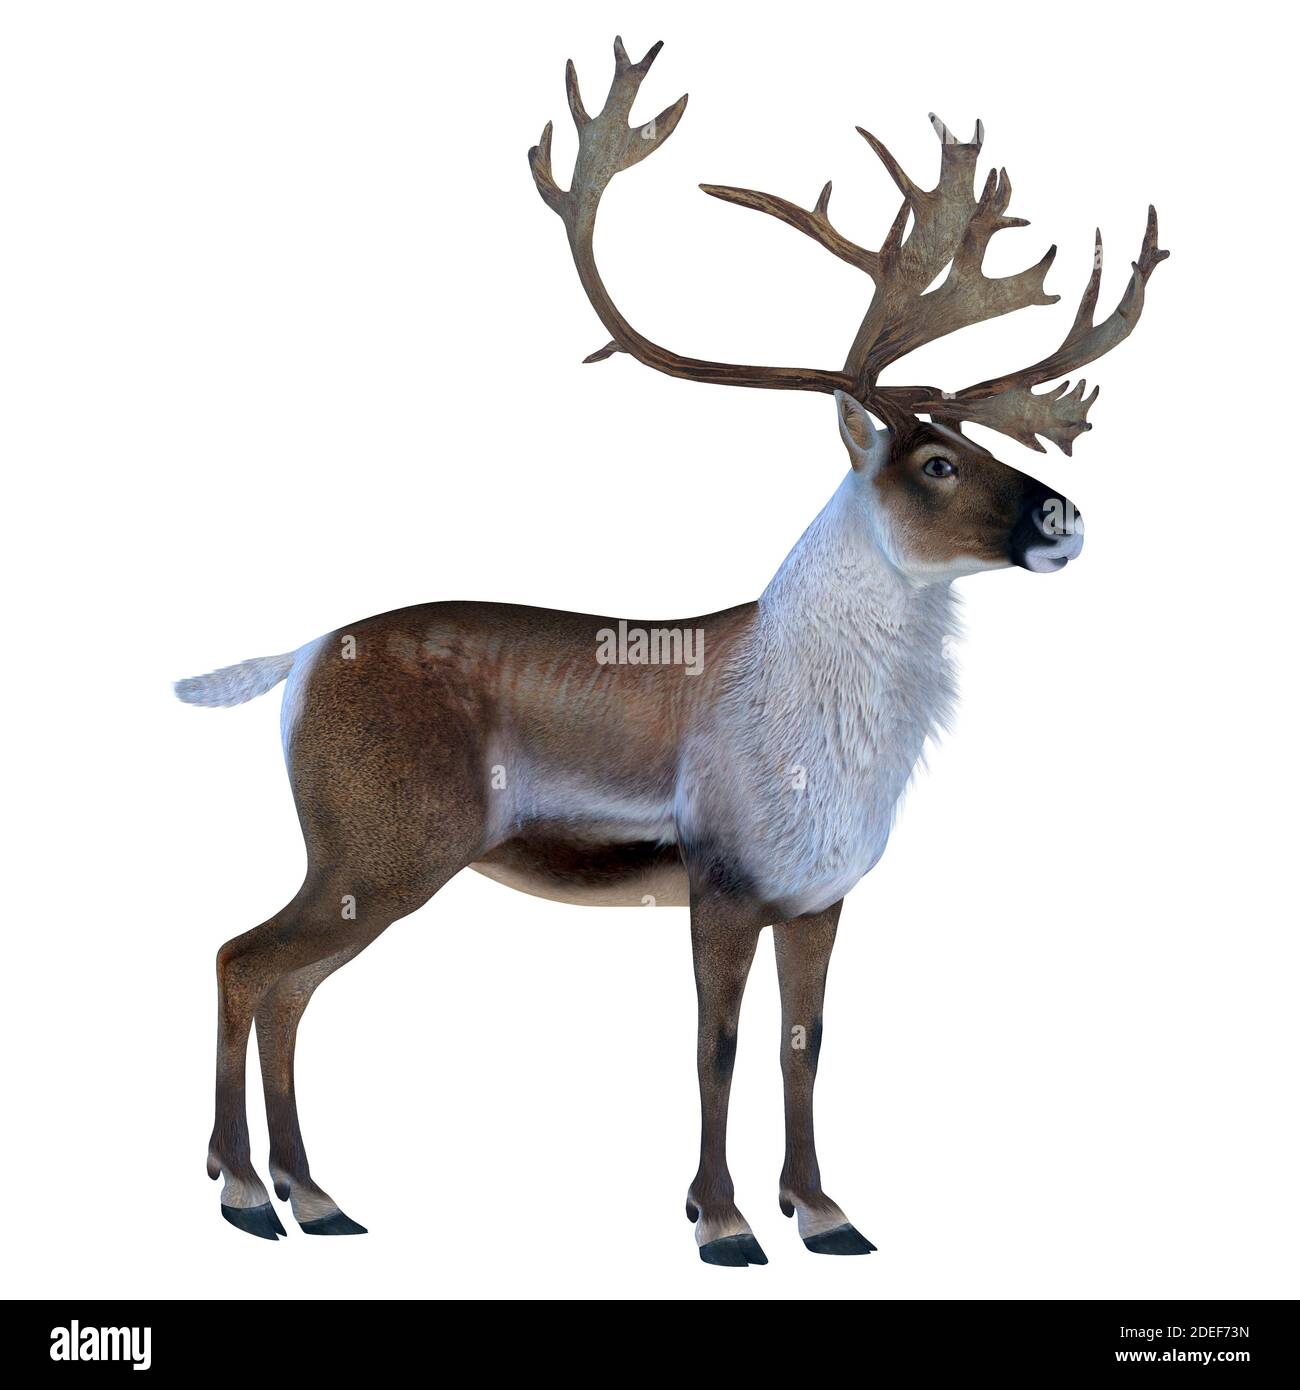 Buck de caribou - le cerf de caribou, également appelé renne, vit dans les régions nordiques de l'Europe, de la Sibérie et de l'Amérique du Nord. Banque D'Images